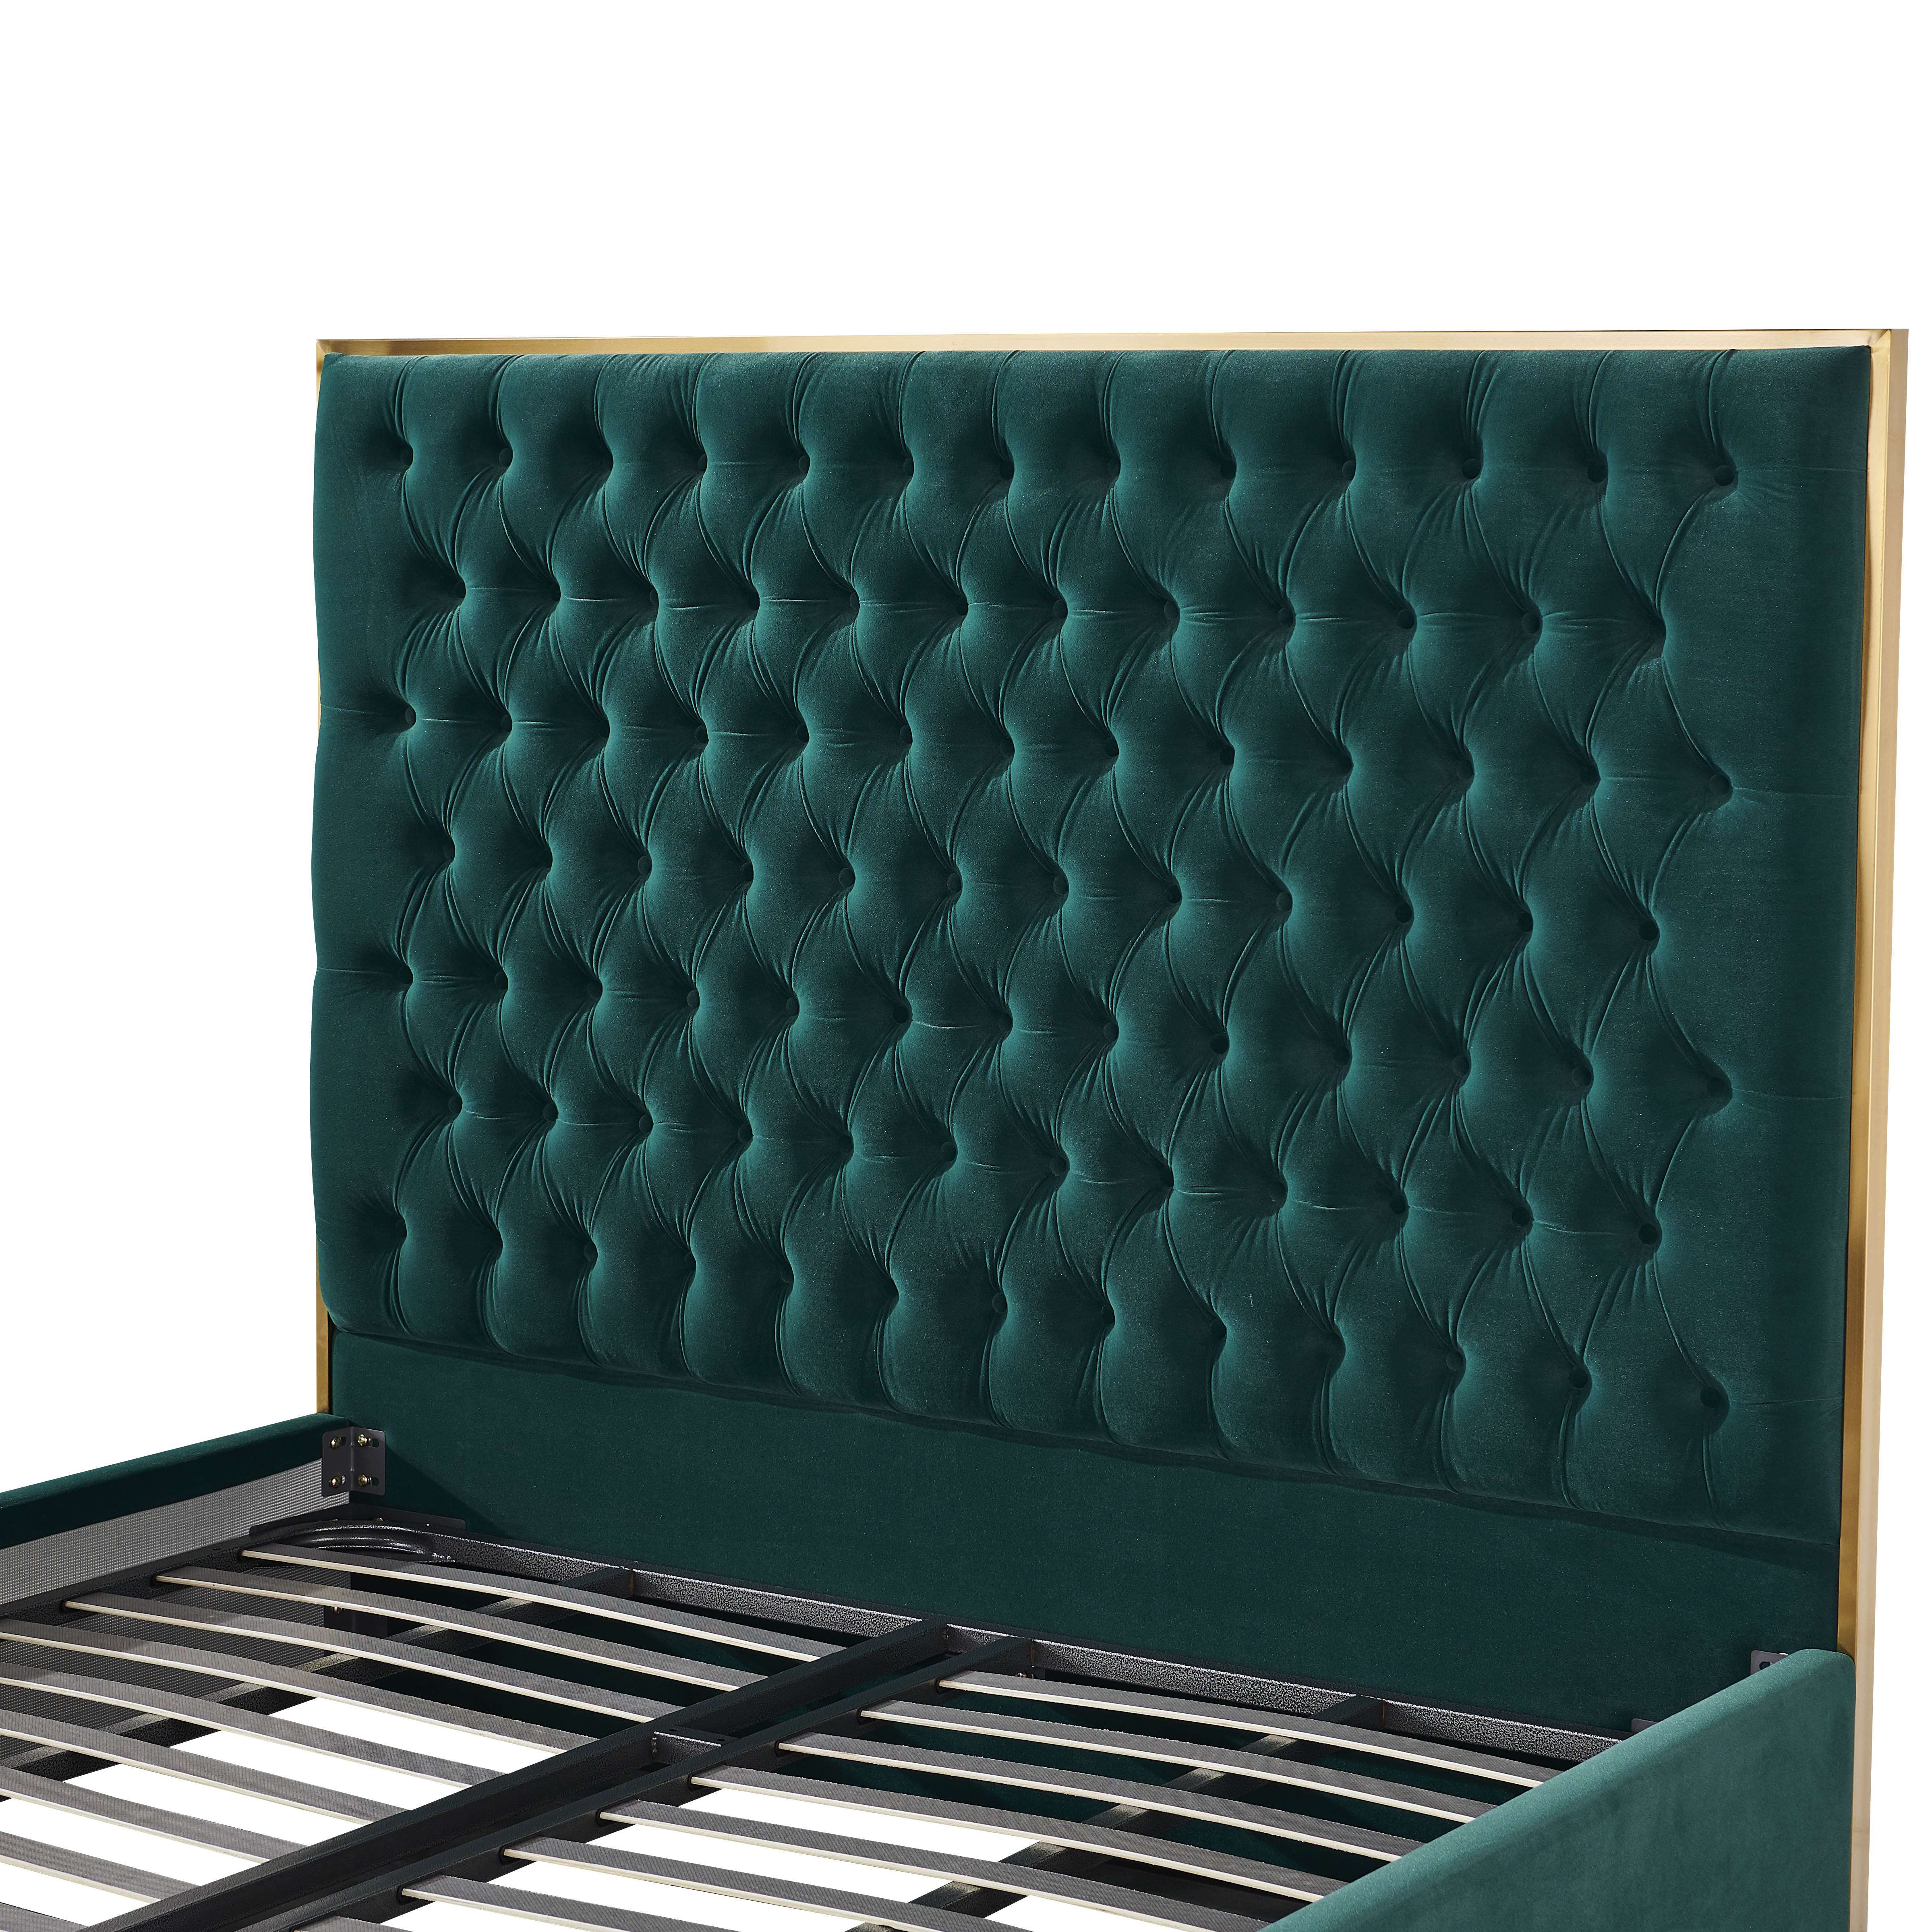 Wholesale Modern Tufted Upholstered Bed Manufacturer | LZ-R948